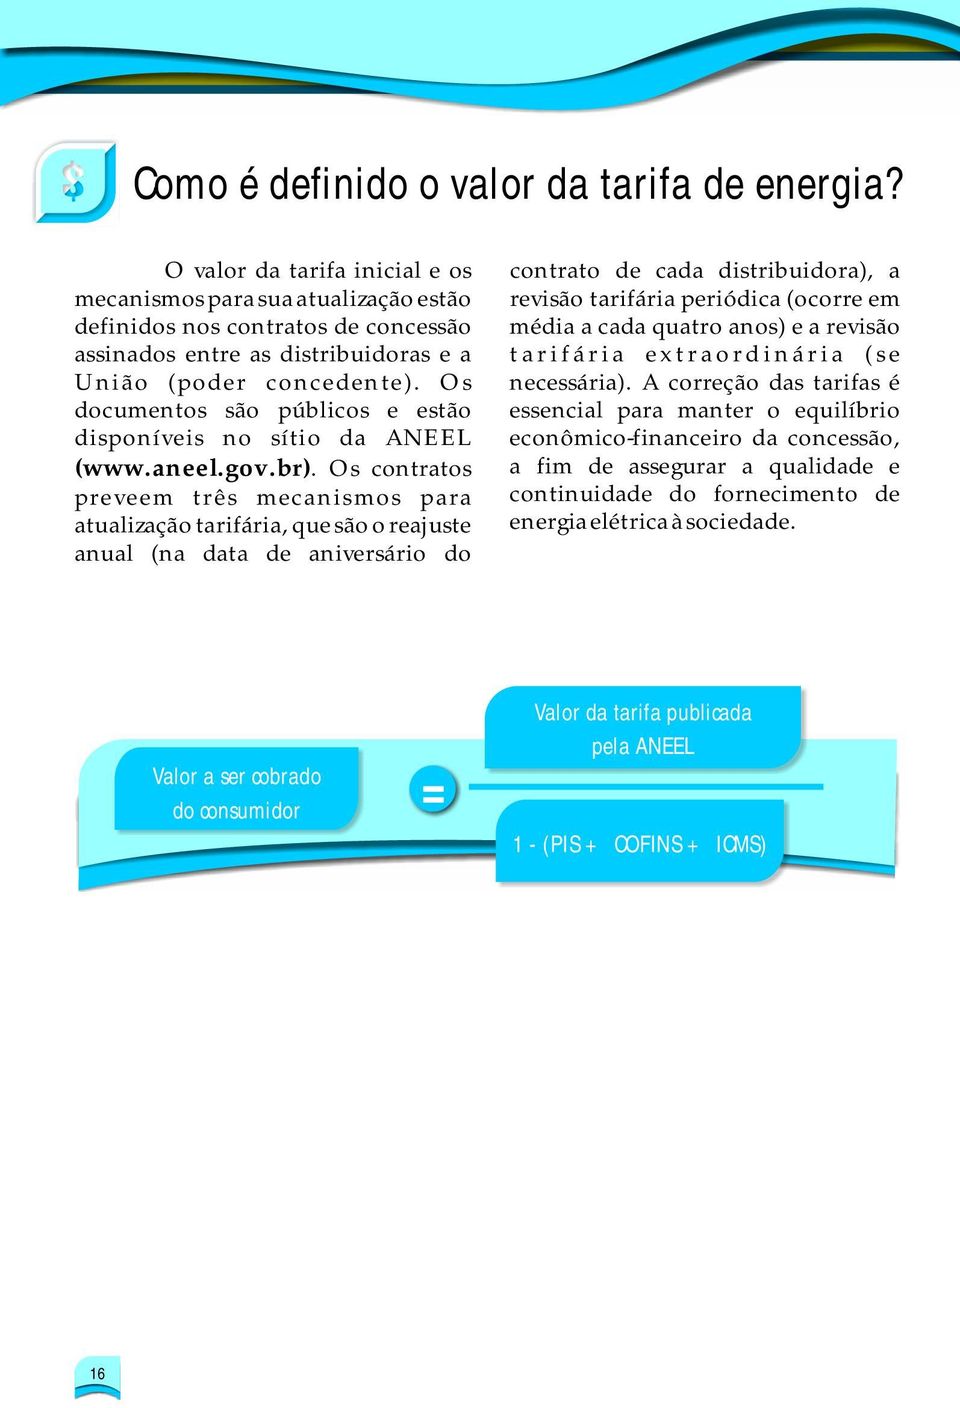 Os documentos são públicos e estão disponíveis no sítio da ANEEL (www.aneel.gov.br).